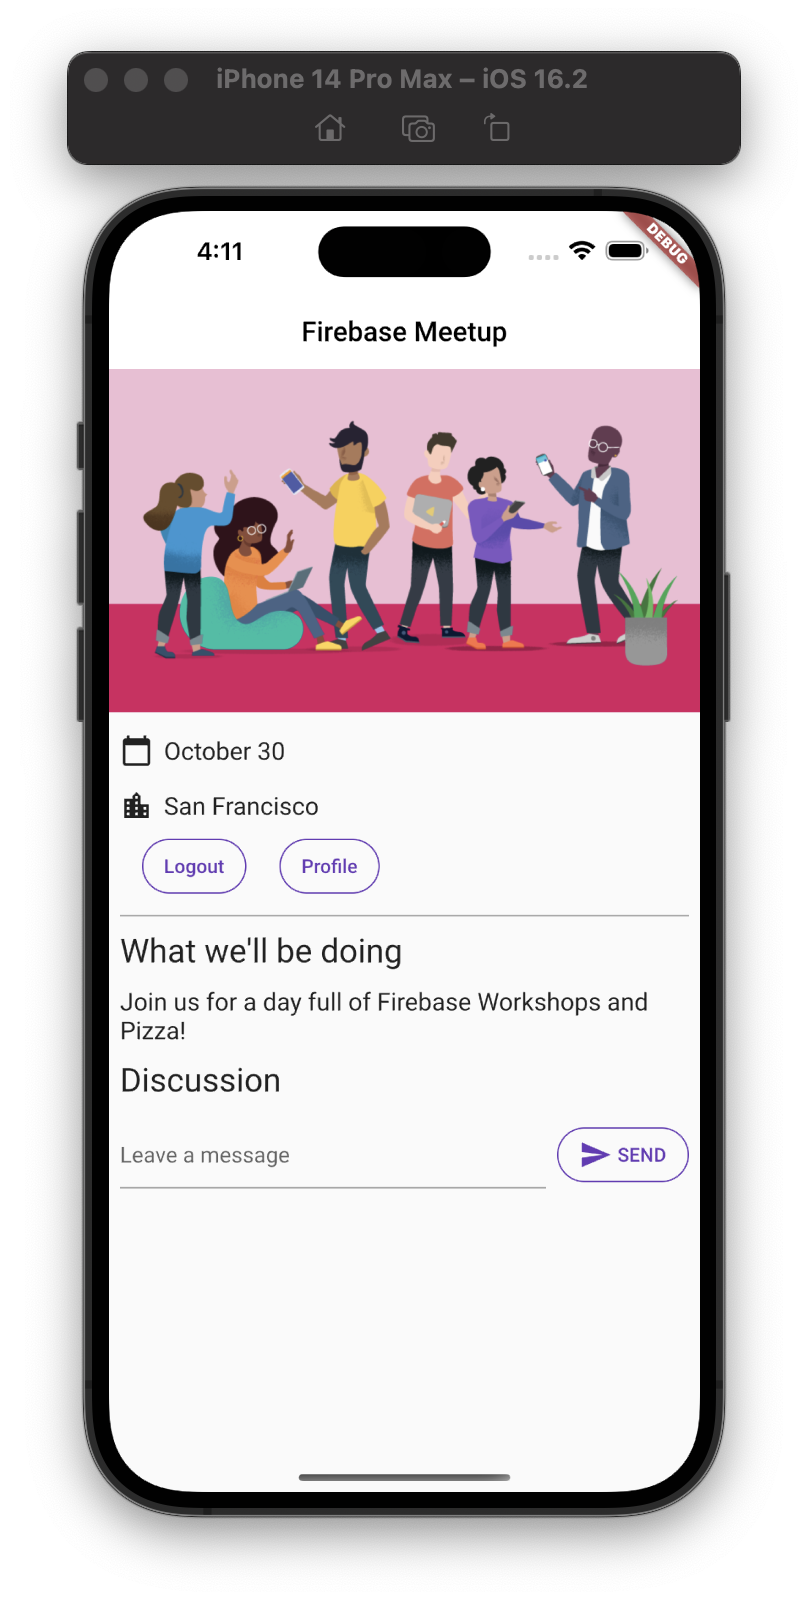 La pantalla principal de la app en iOS con integración de chat